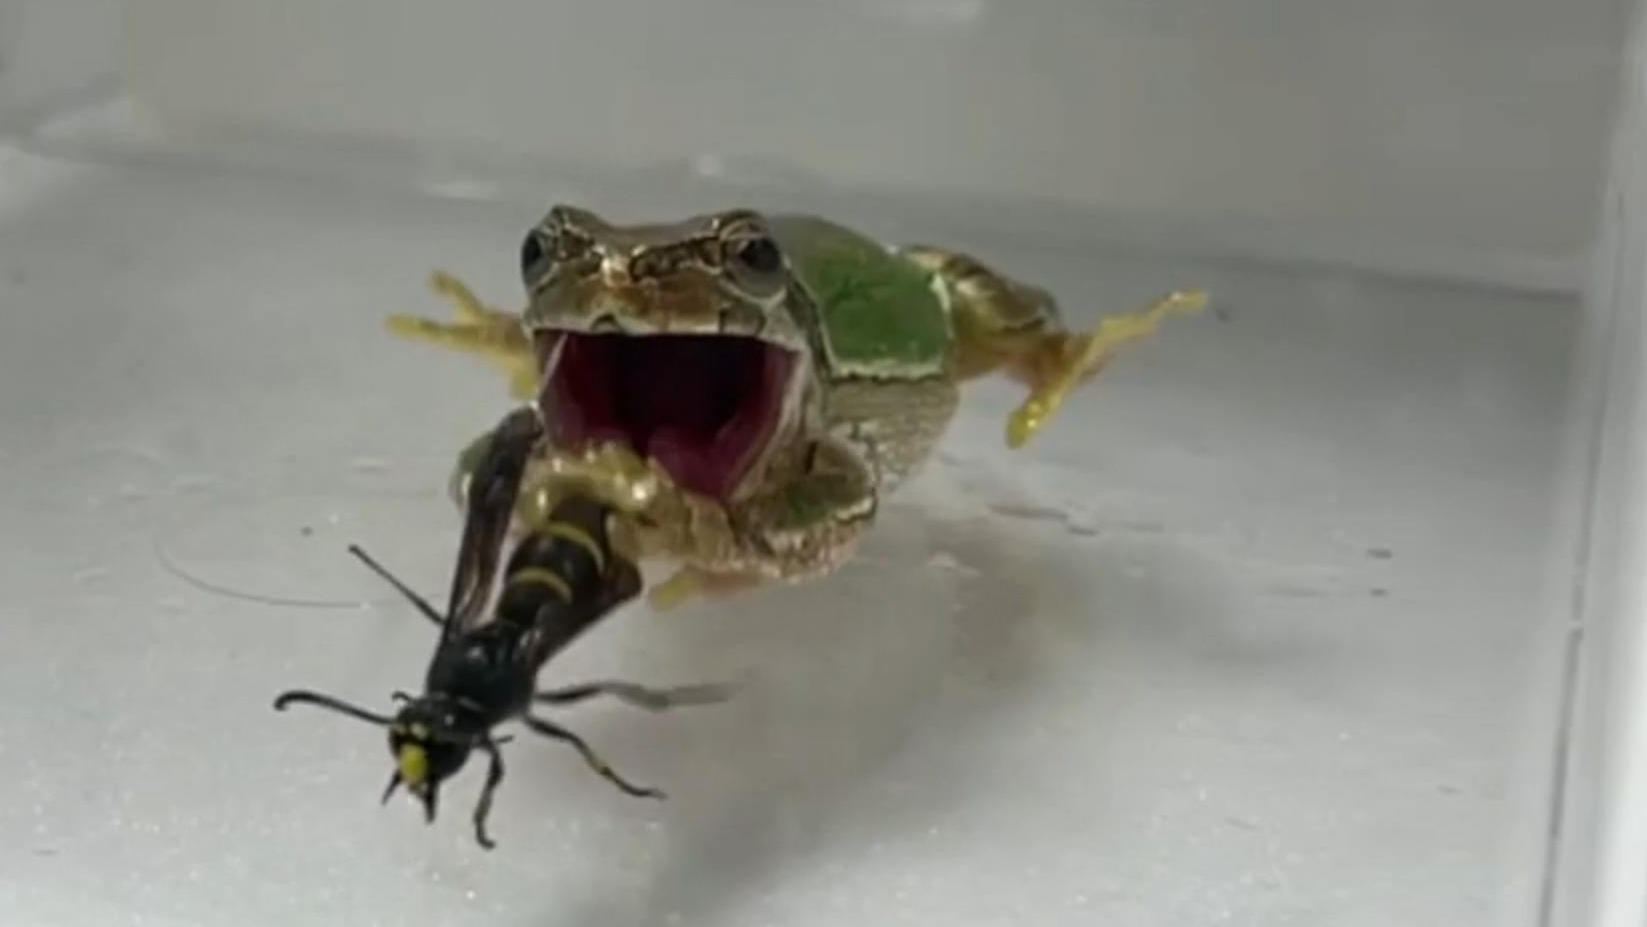 Le vespe maschi si difendono con un pene dentato!  Curiosa difesa nel video